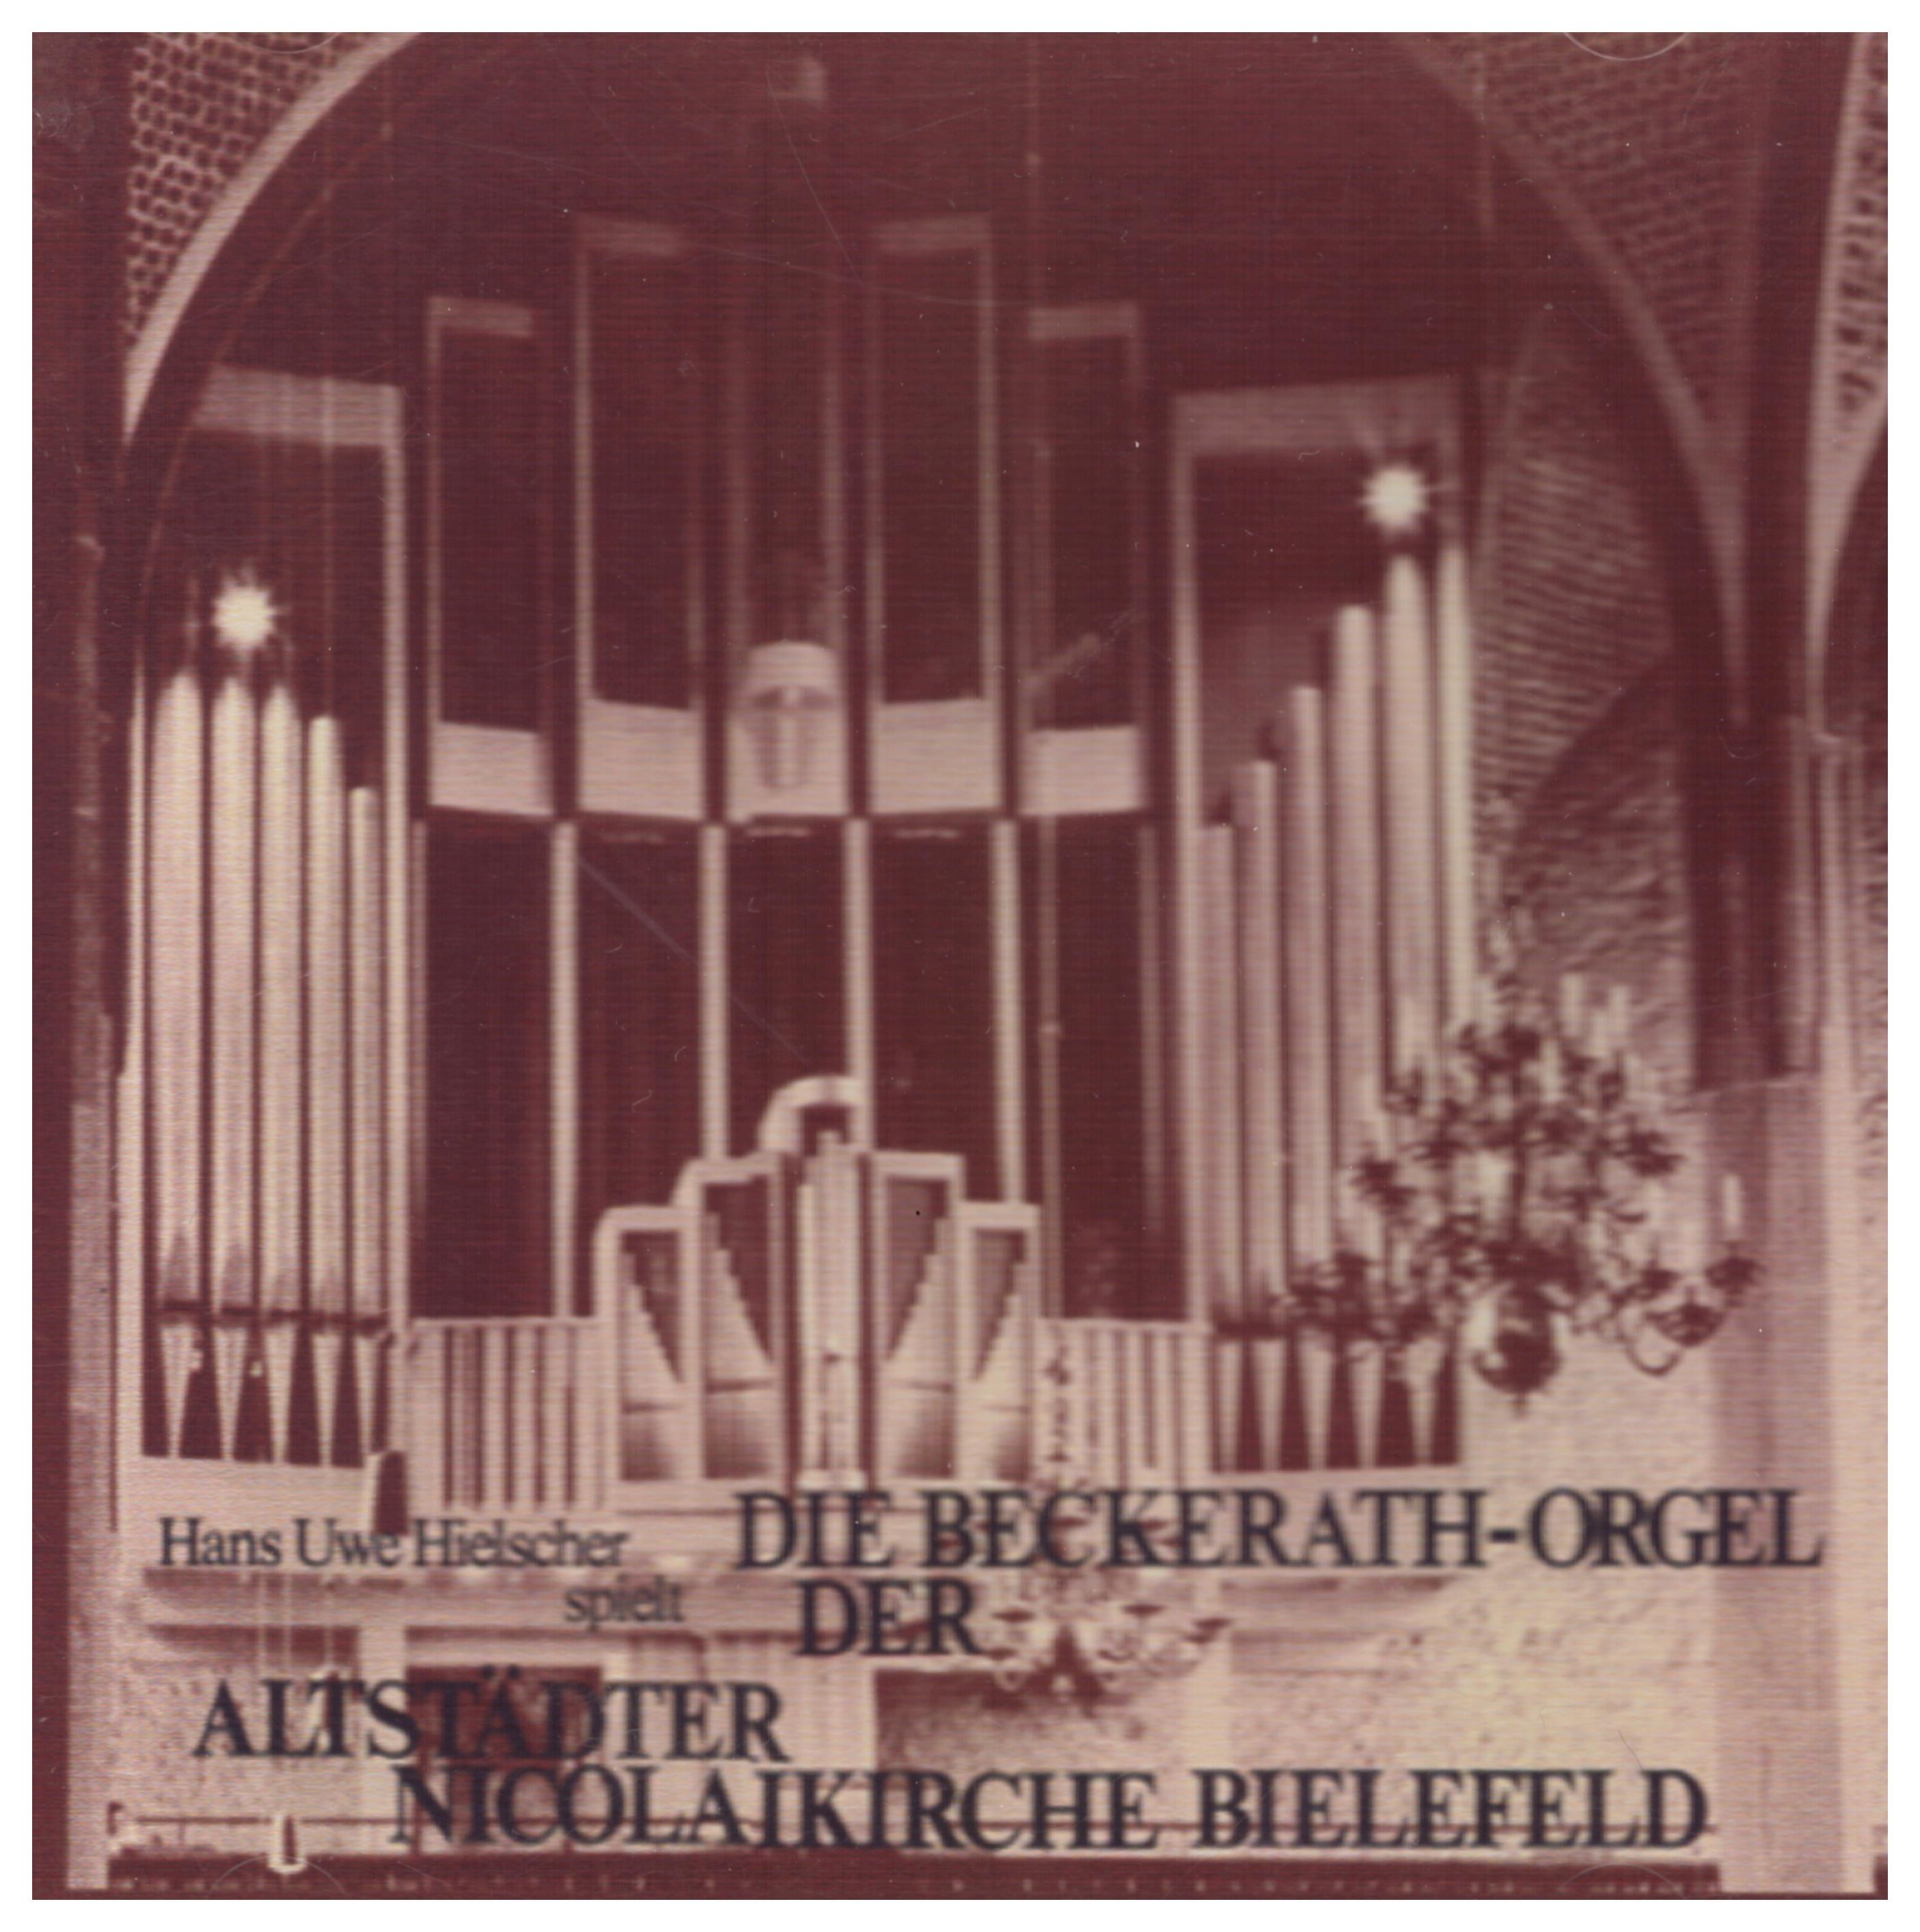 Beckerath Organ at Altstädter Nicolaikirche Bielefeld